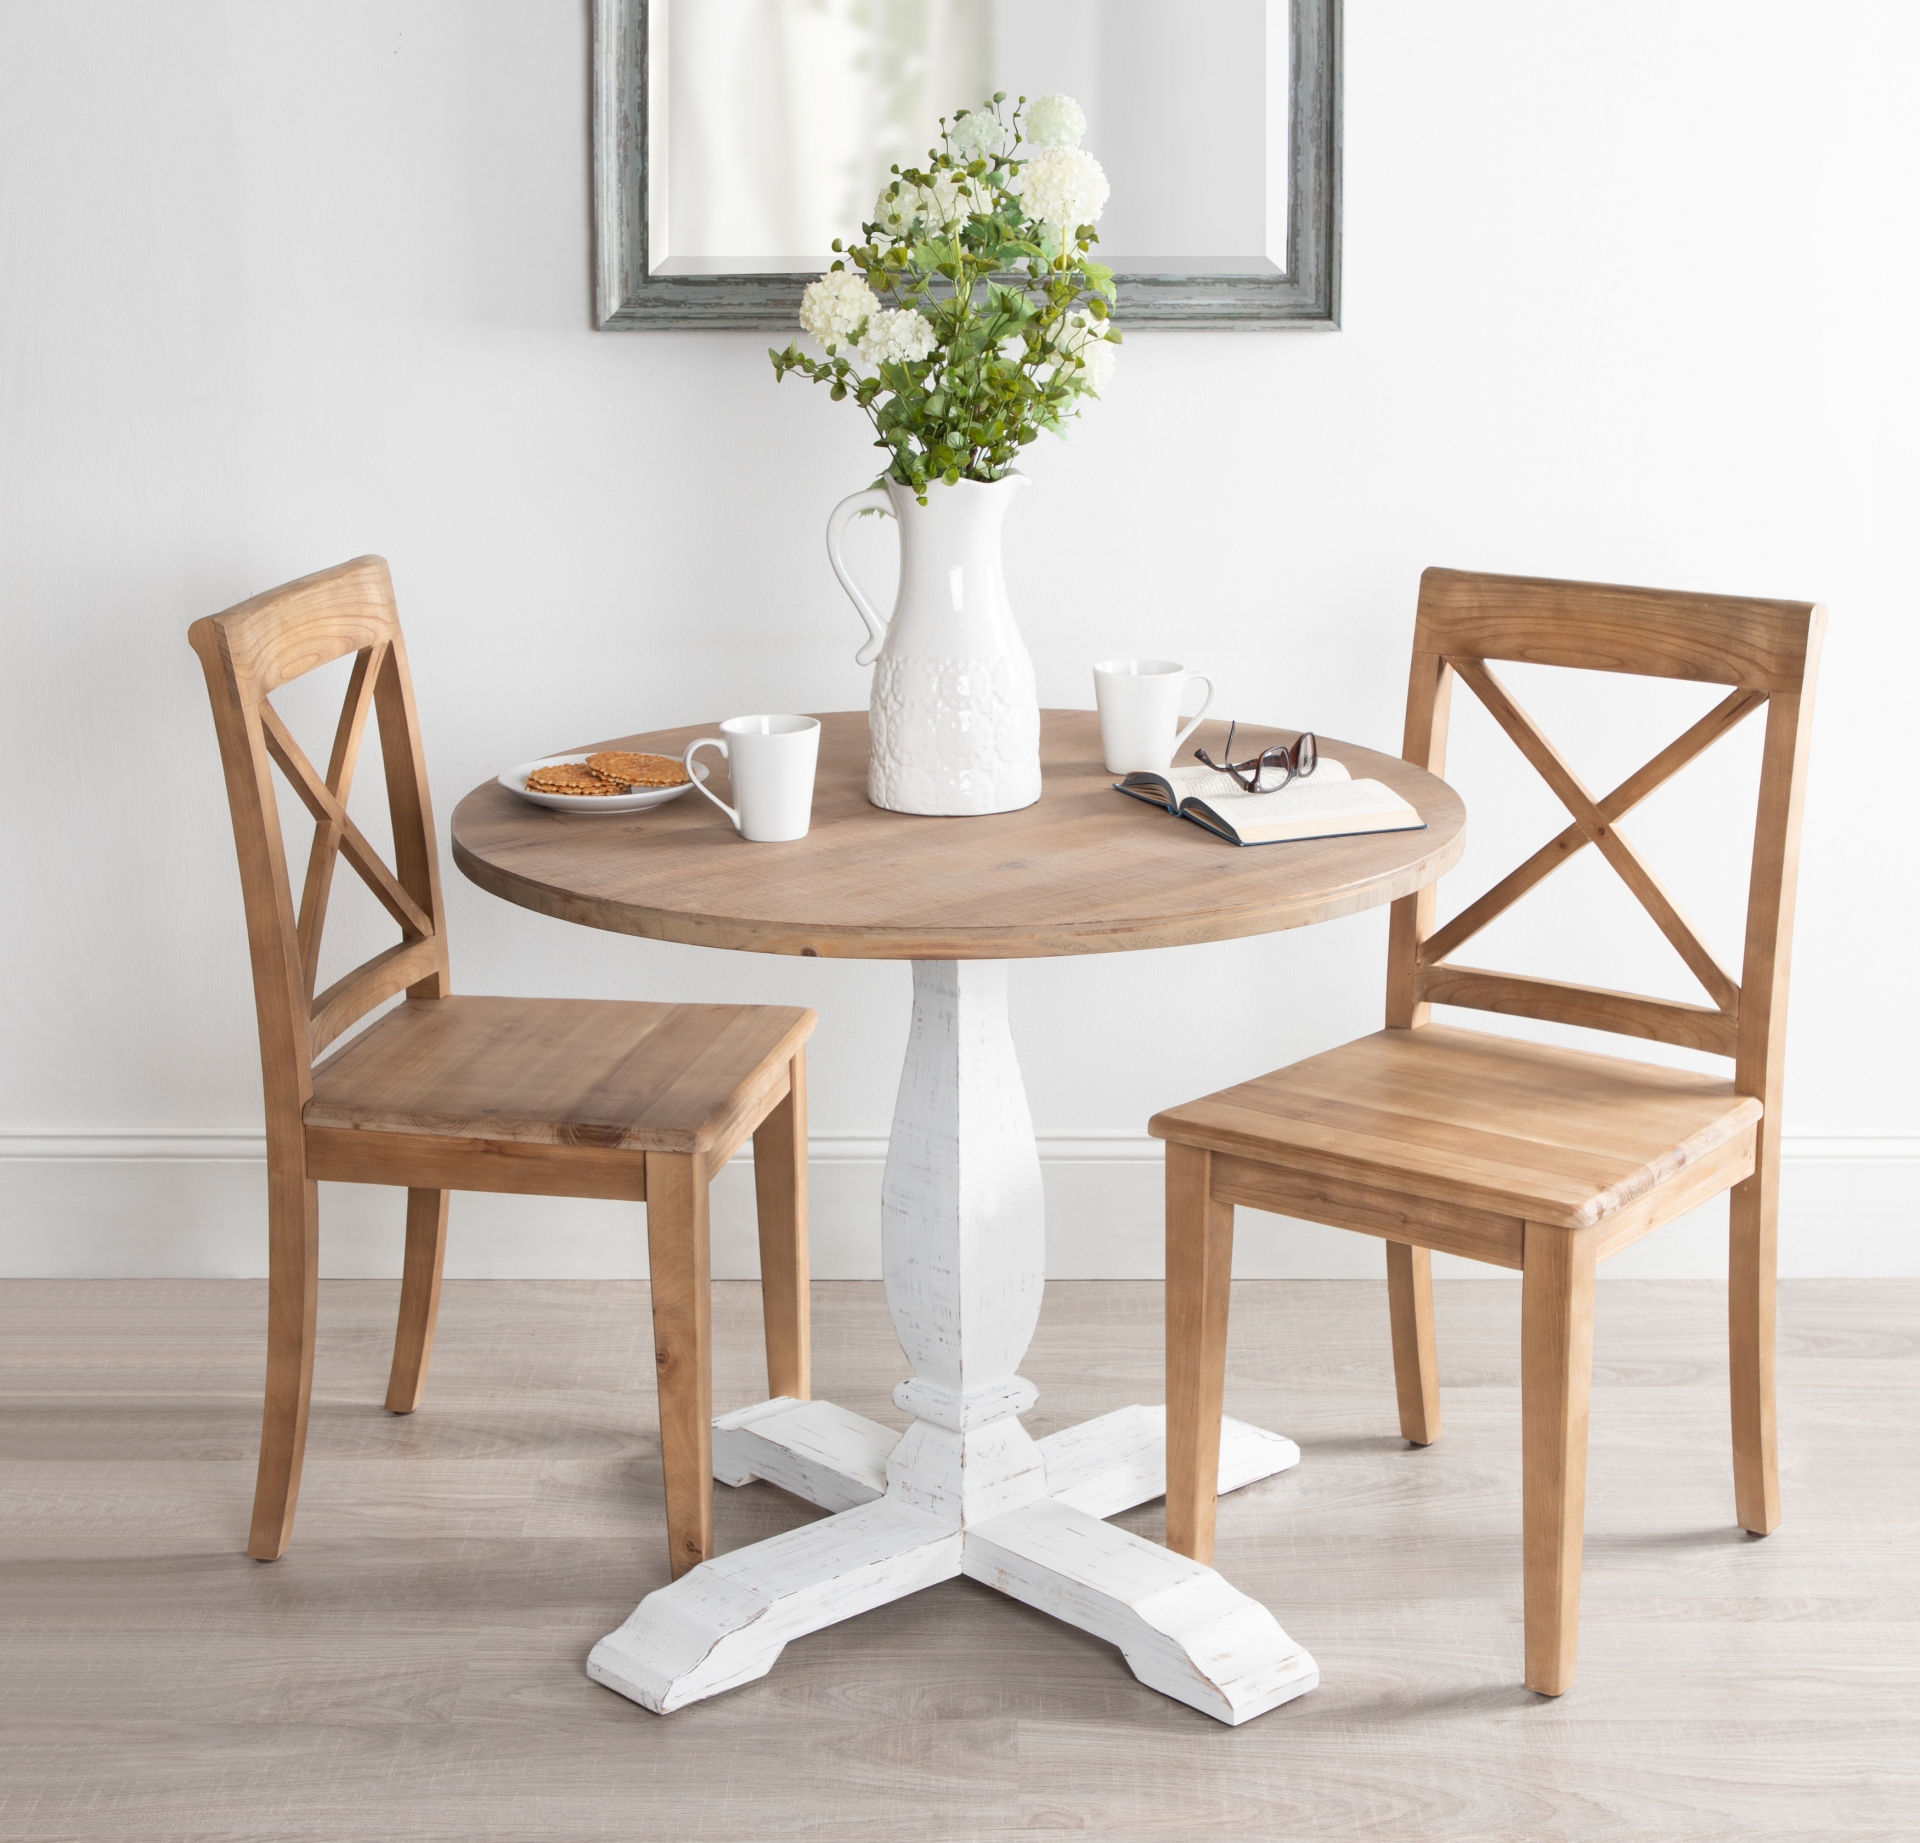 Thiết kế bàn ăn hình tròn này là sự lựa chọn hoàn hảo cho không gian nhỏ như góc ăn sáng hoặc bàn ăn trong ngôi nhà chỉ có 2 người lớn. Phần chân bàn quét vôi trắng, mặt bàn bằng gỗ tự nhiên đem đến sự gọn nhẹ và linh hoạt cho khu vực ăn uống.